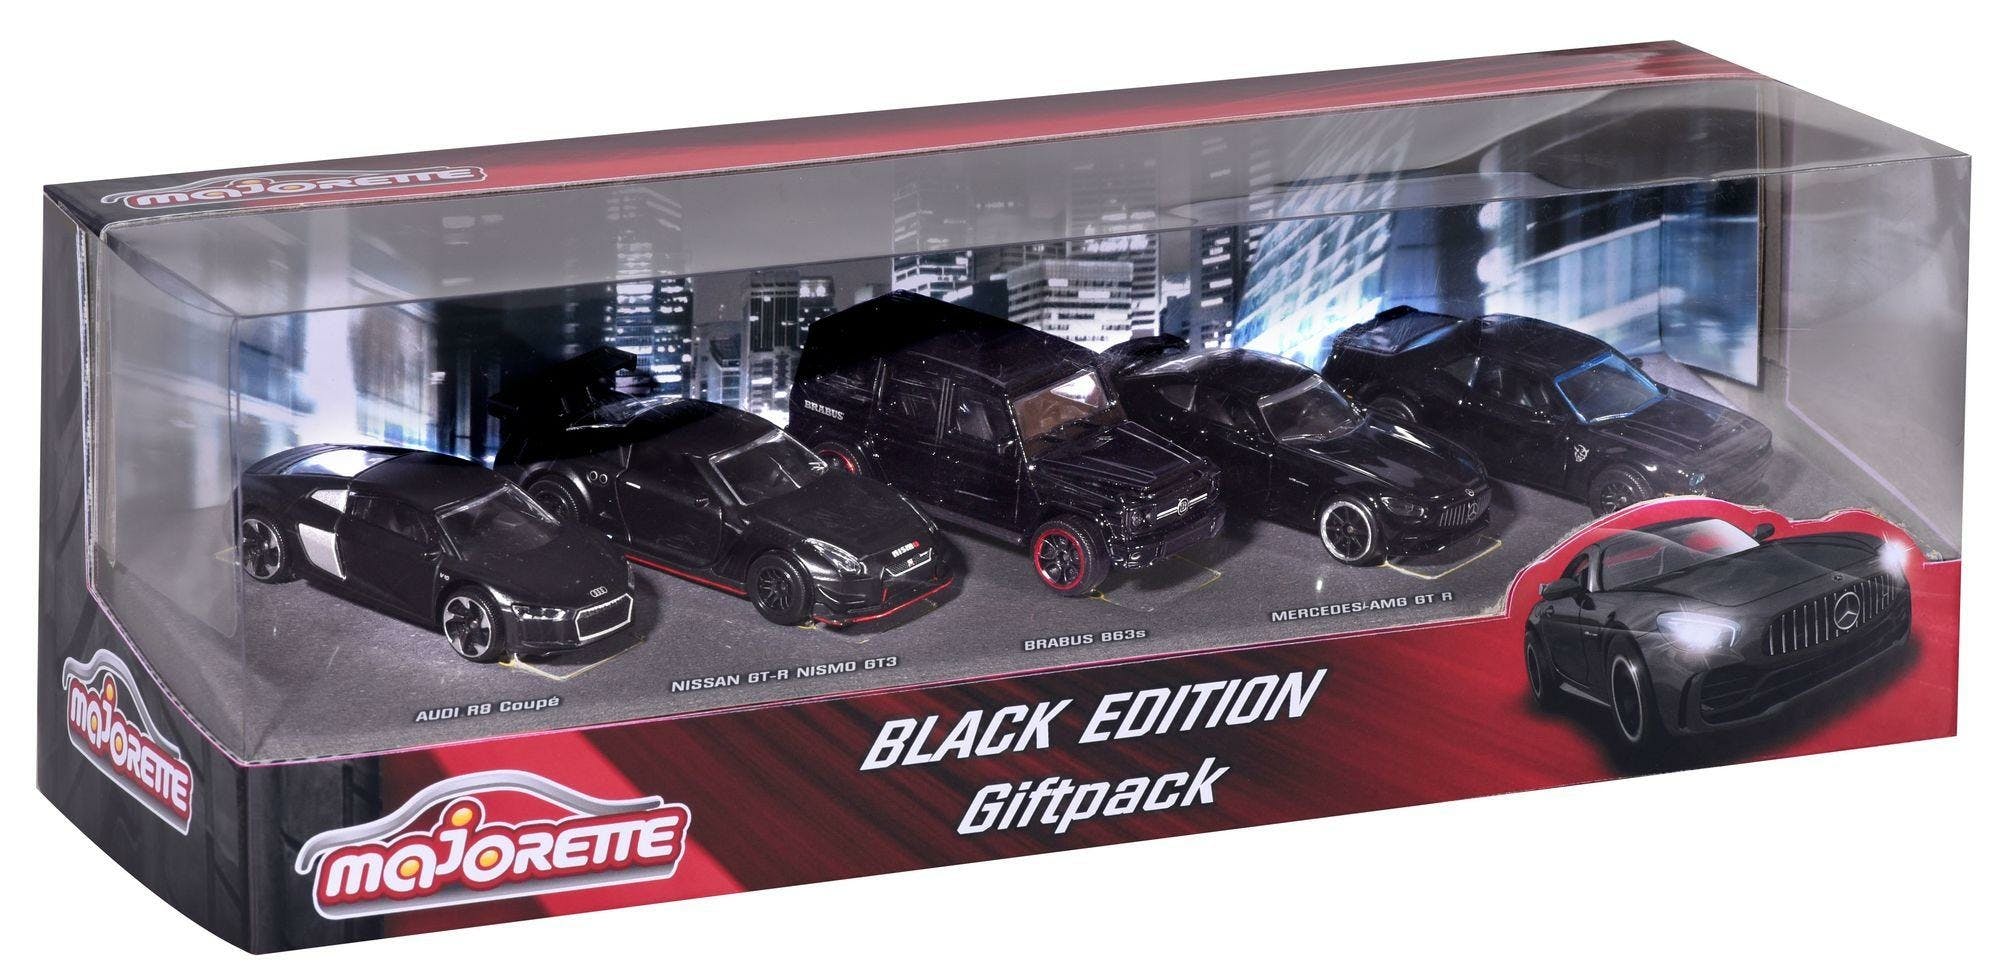 Majorette Black Edition 5 Stuks Giftpack